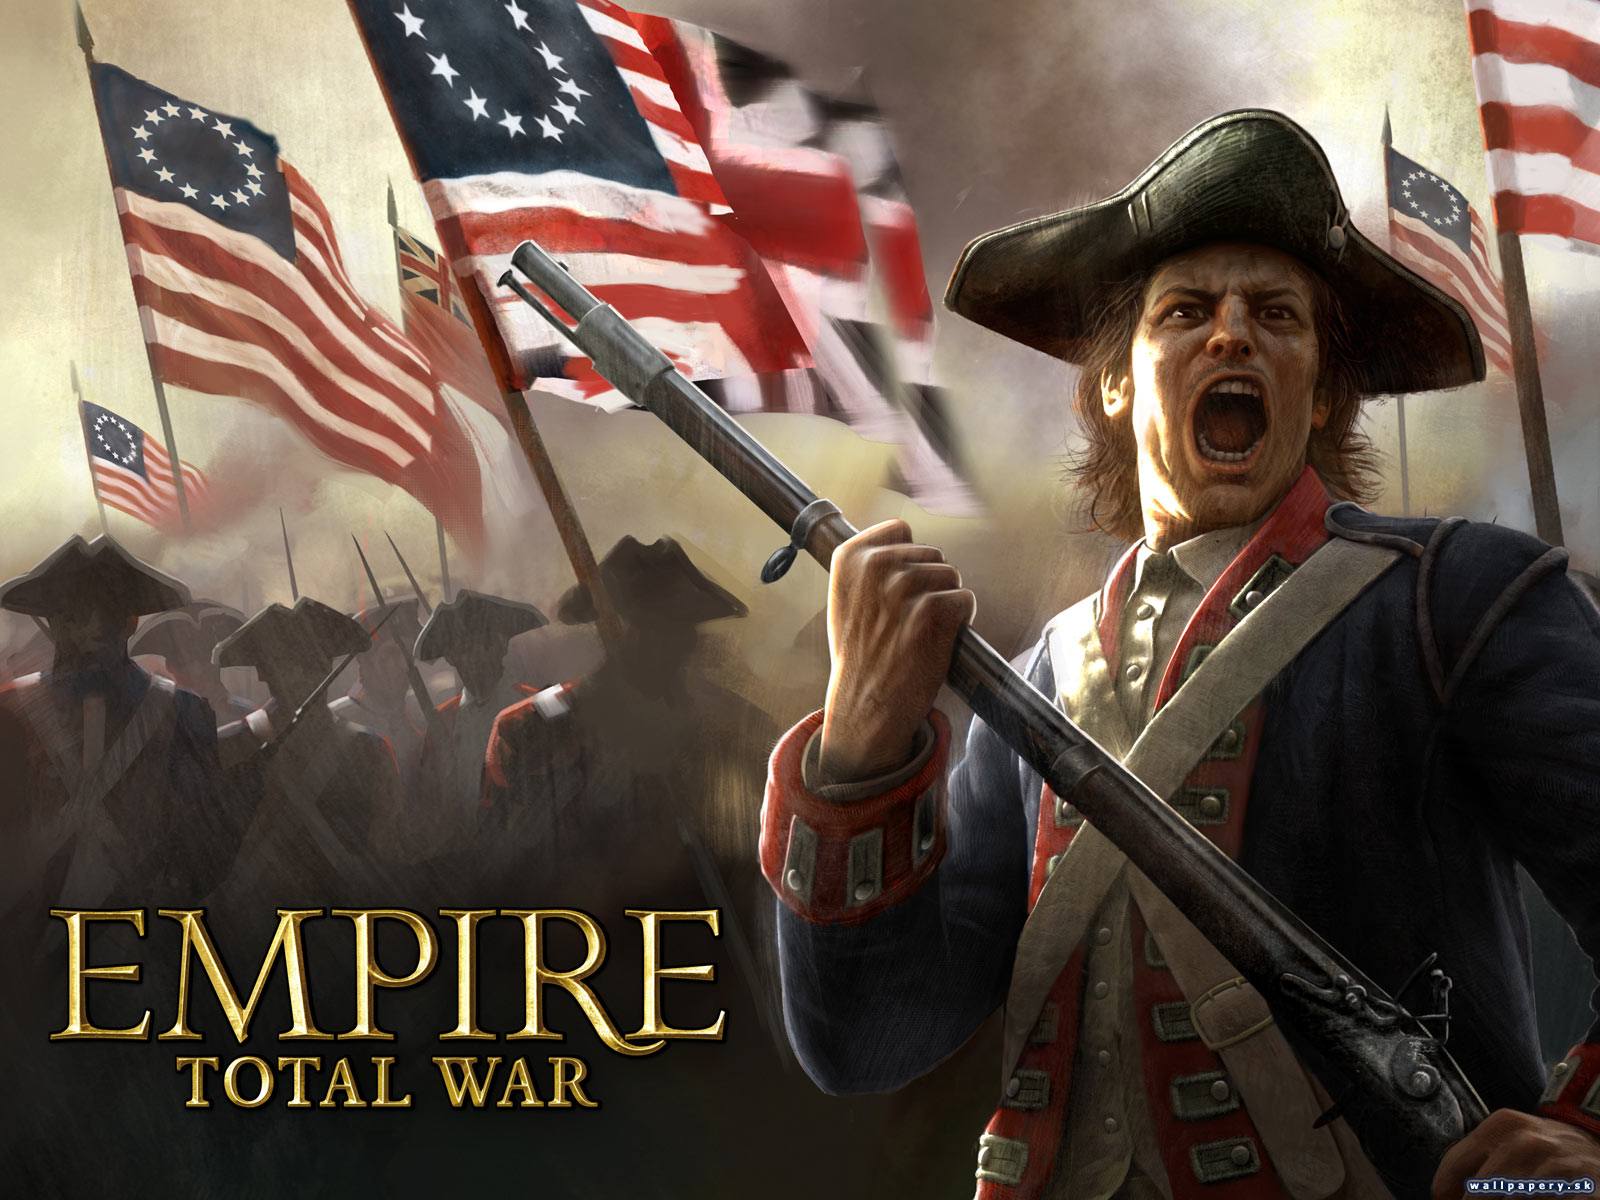 empire total war wallpaper,rebellion,film,veranstaltung,veteranen tag,tag der unabhängigkeit